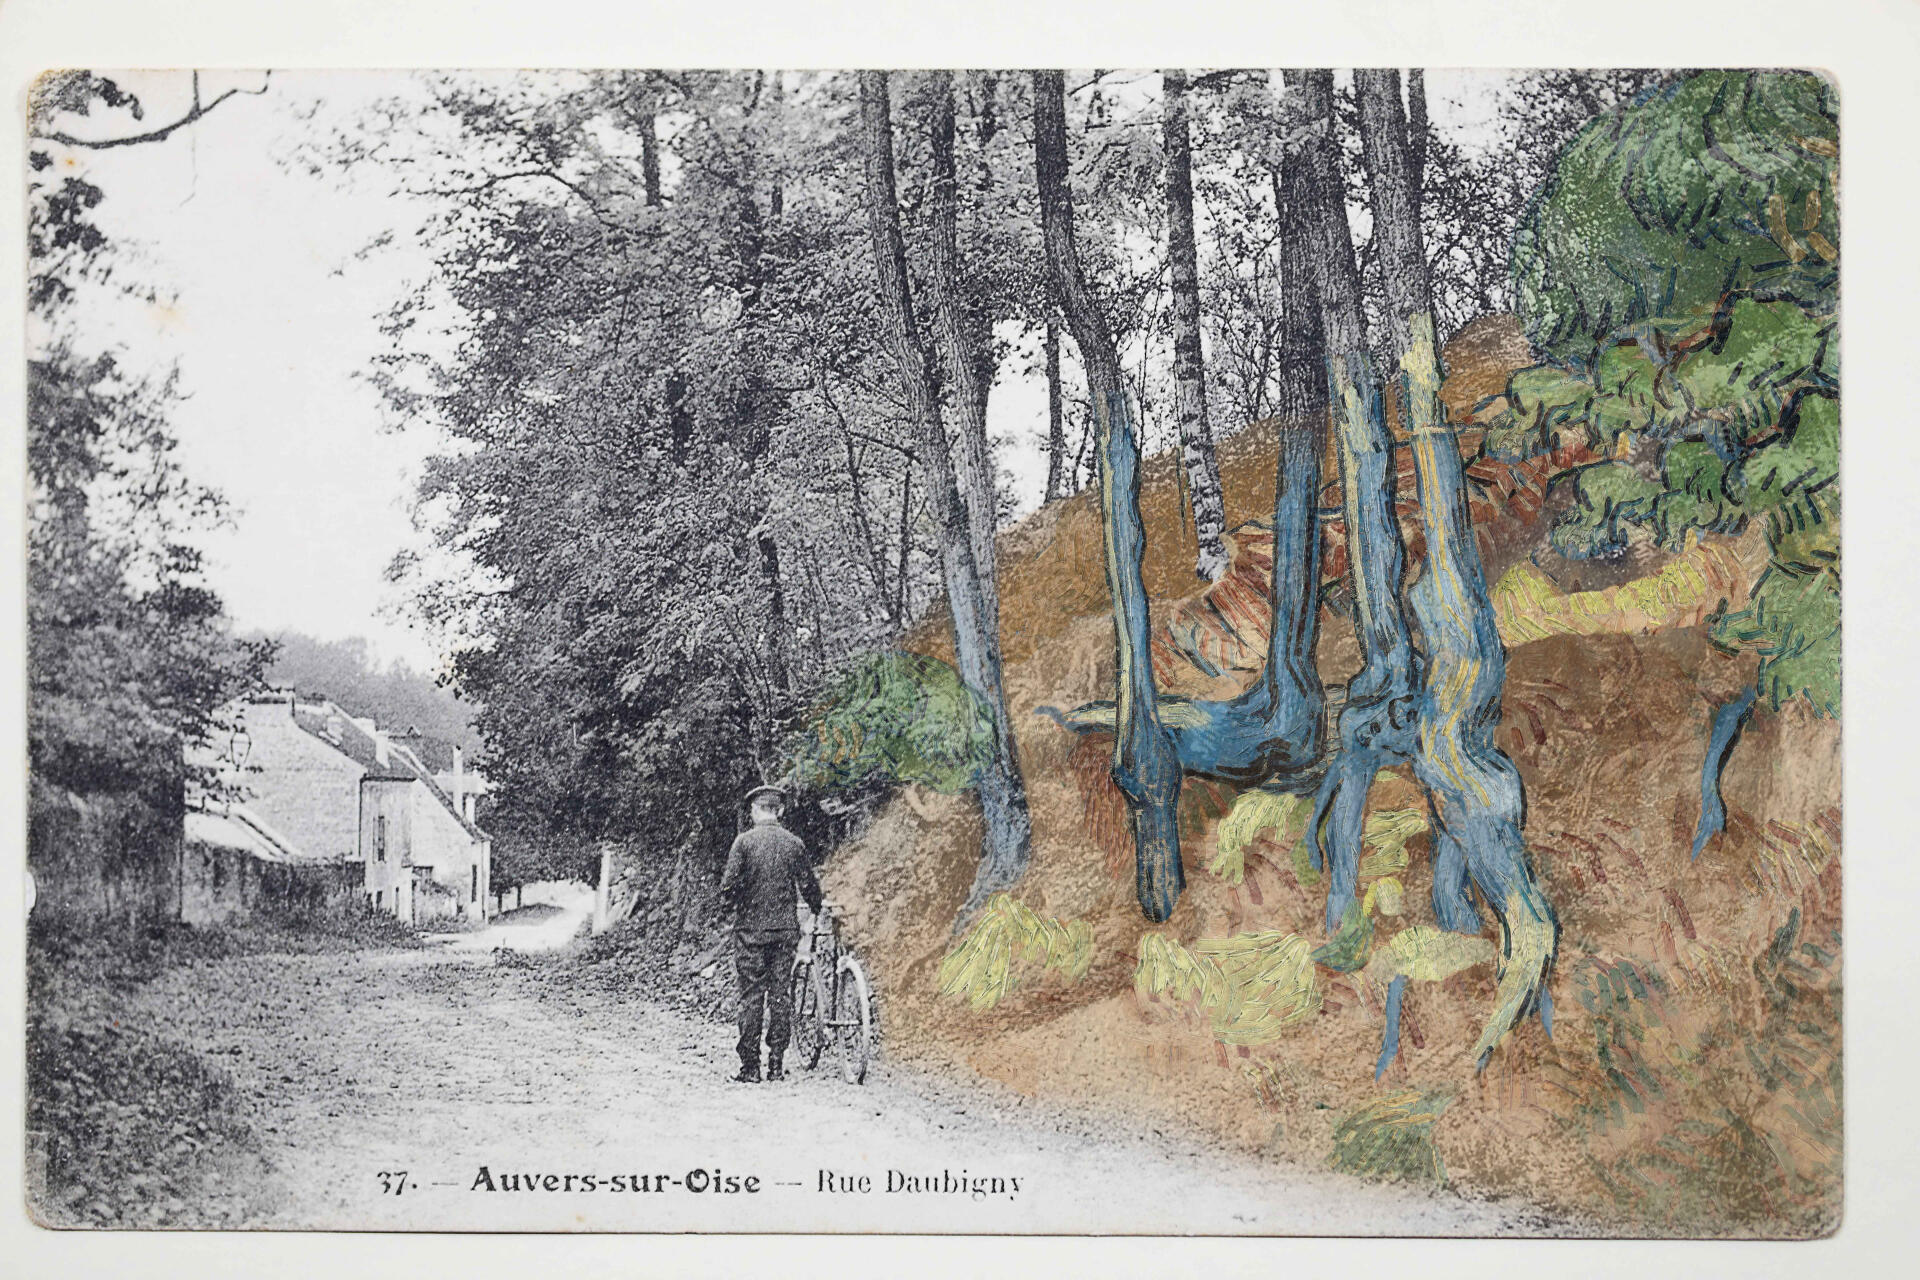 Montage réalisé avec la carte postale (rue Daubigny, Auvers-sur-Oise, vers 1900-1910) et le tableau « Racines d’arbres » de Van Gogh.